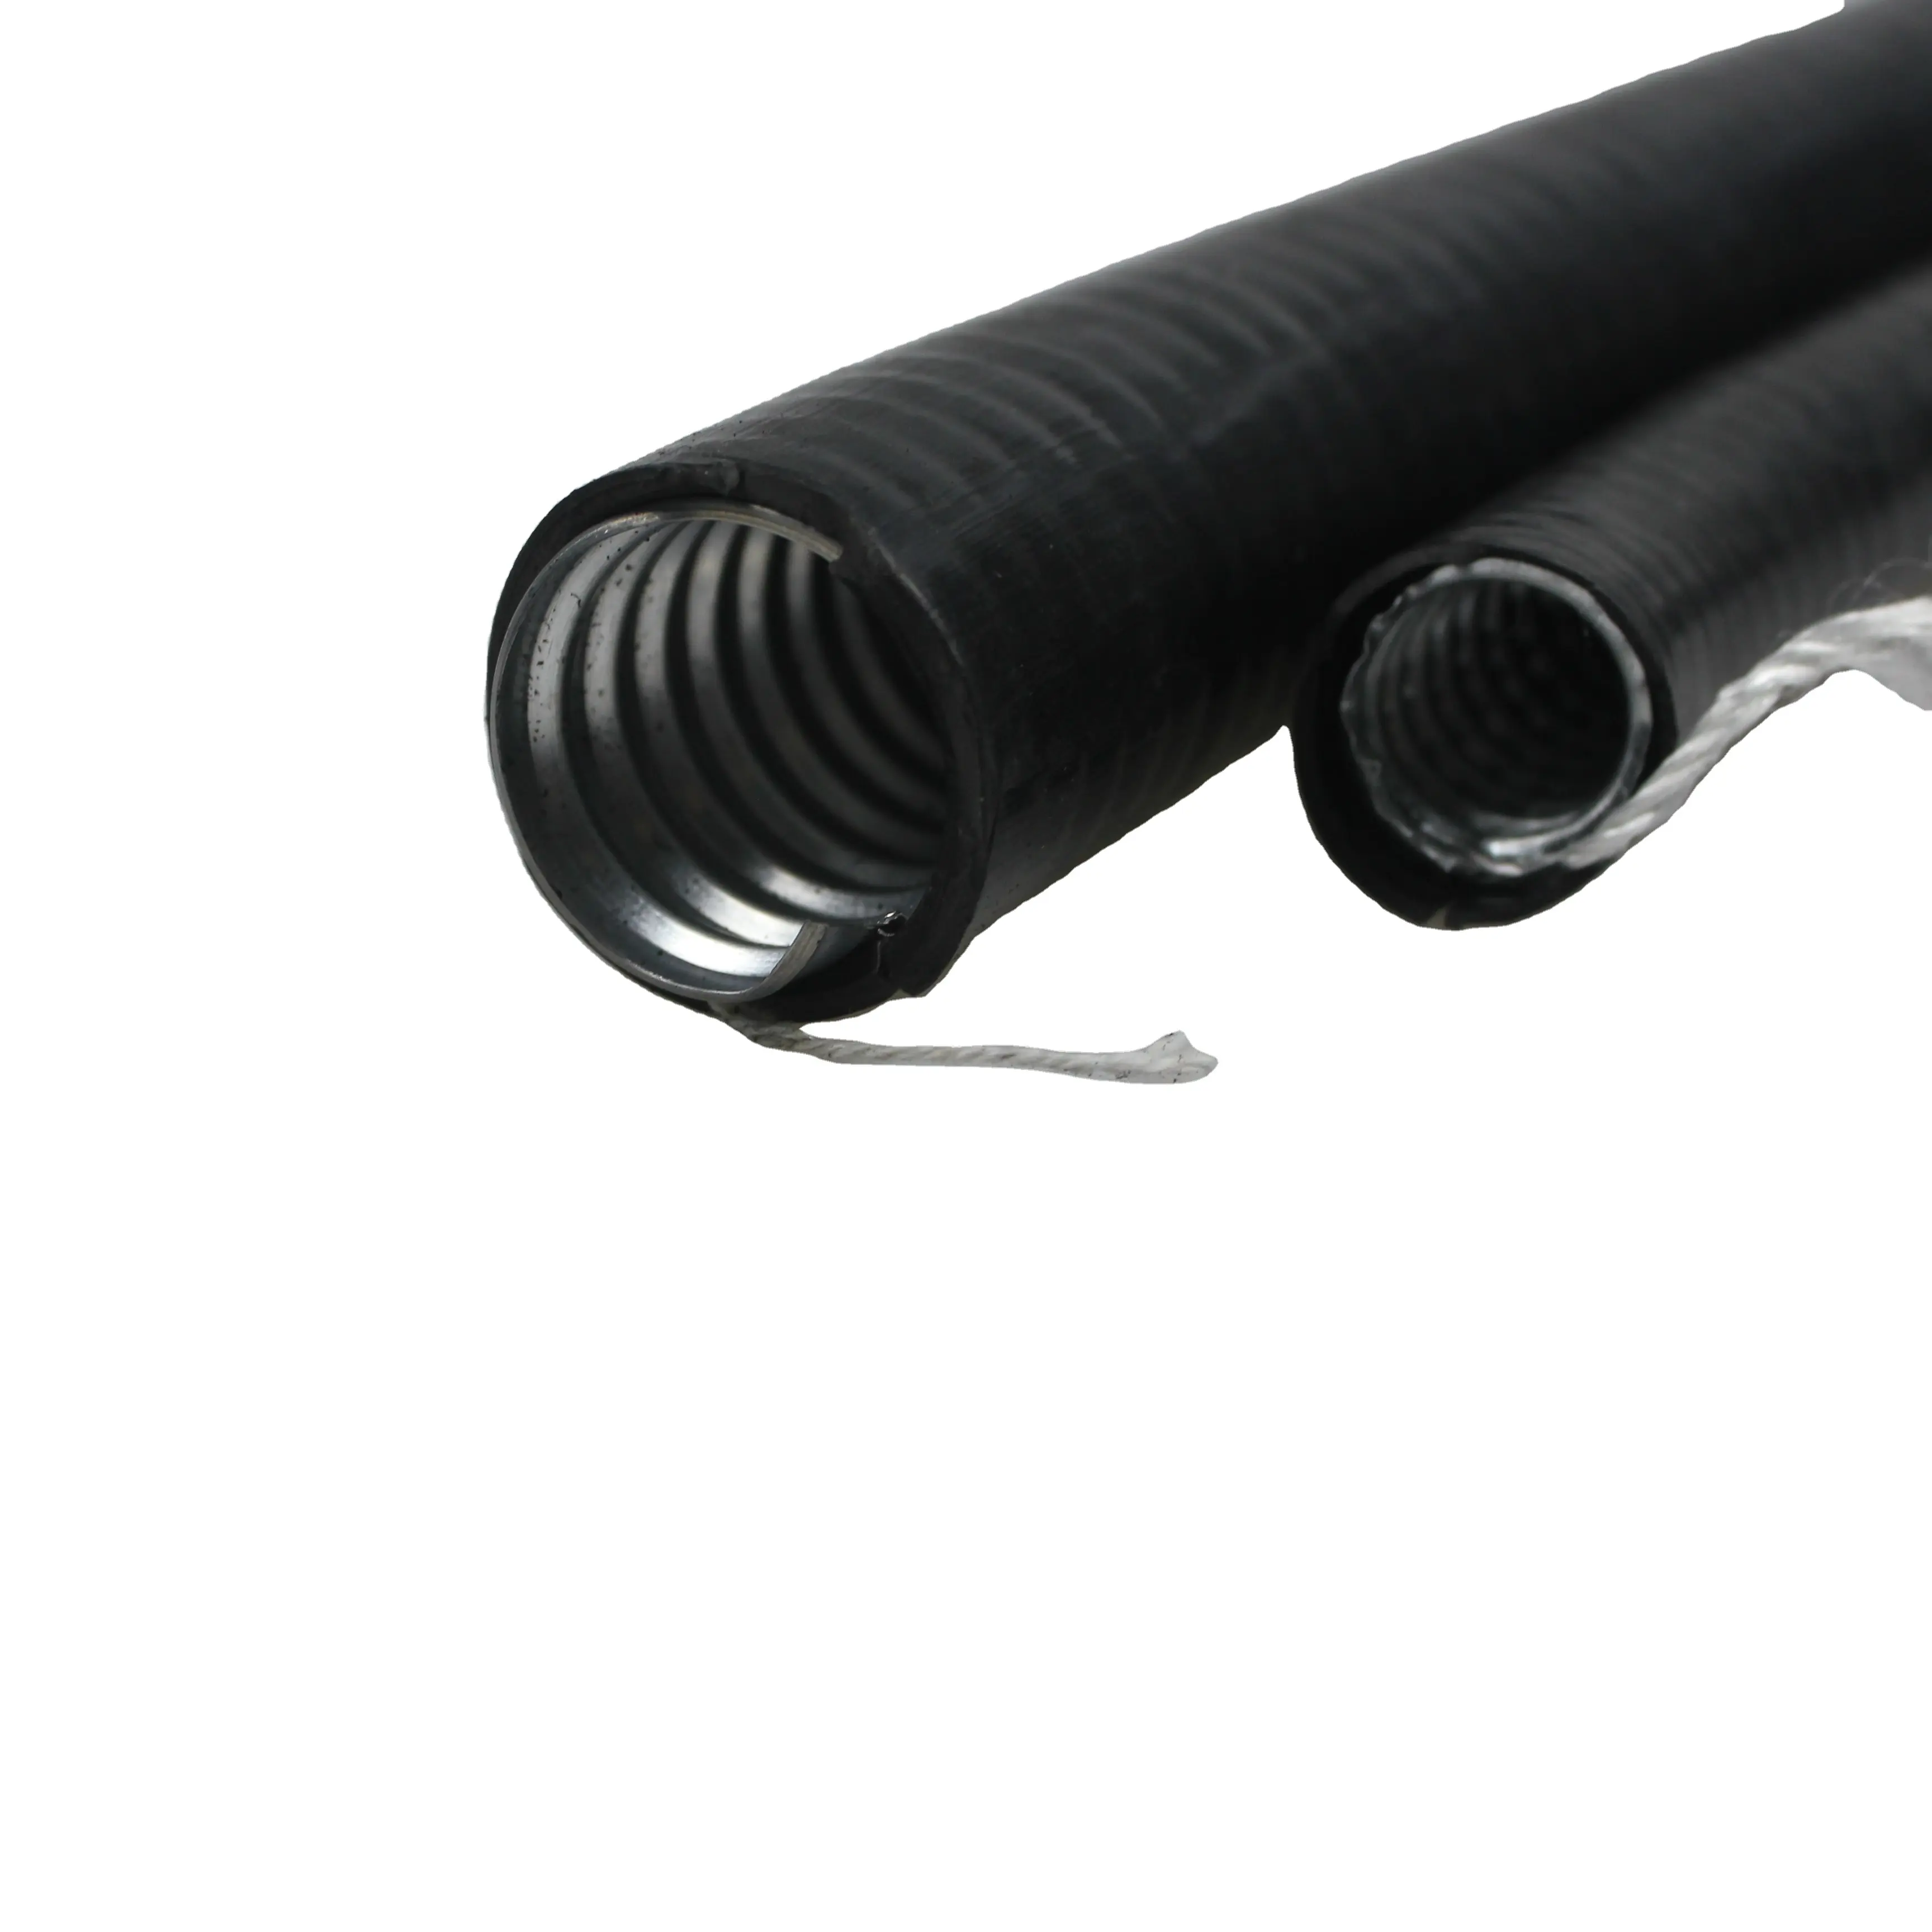 Conducto de manguera Flexible para uso Industrial, tubo de líquido corrugado de diseño especial de 1/2 pulgadas, precio ajustado